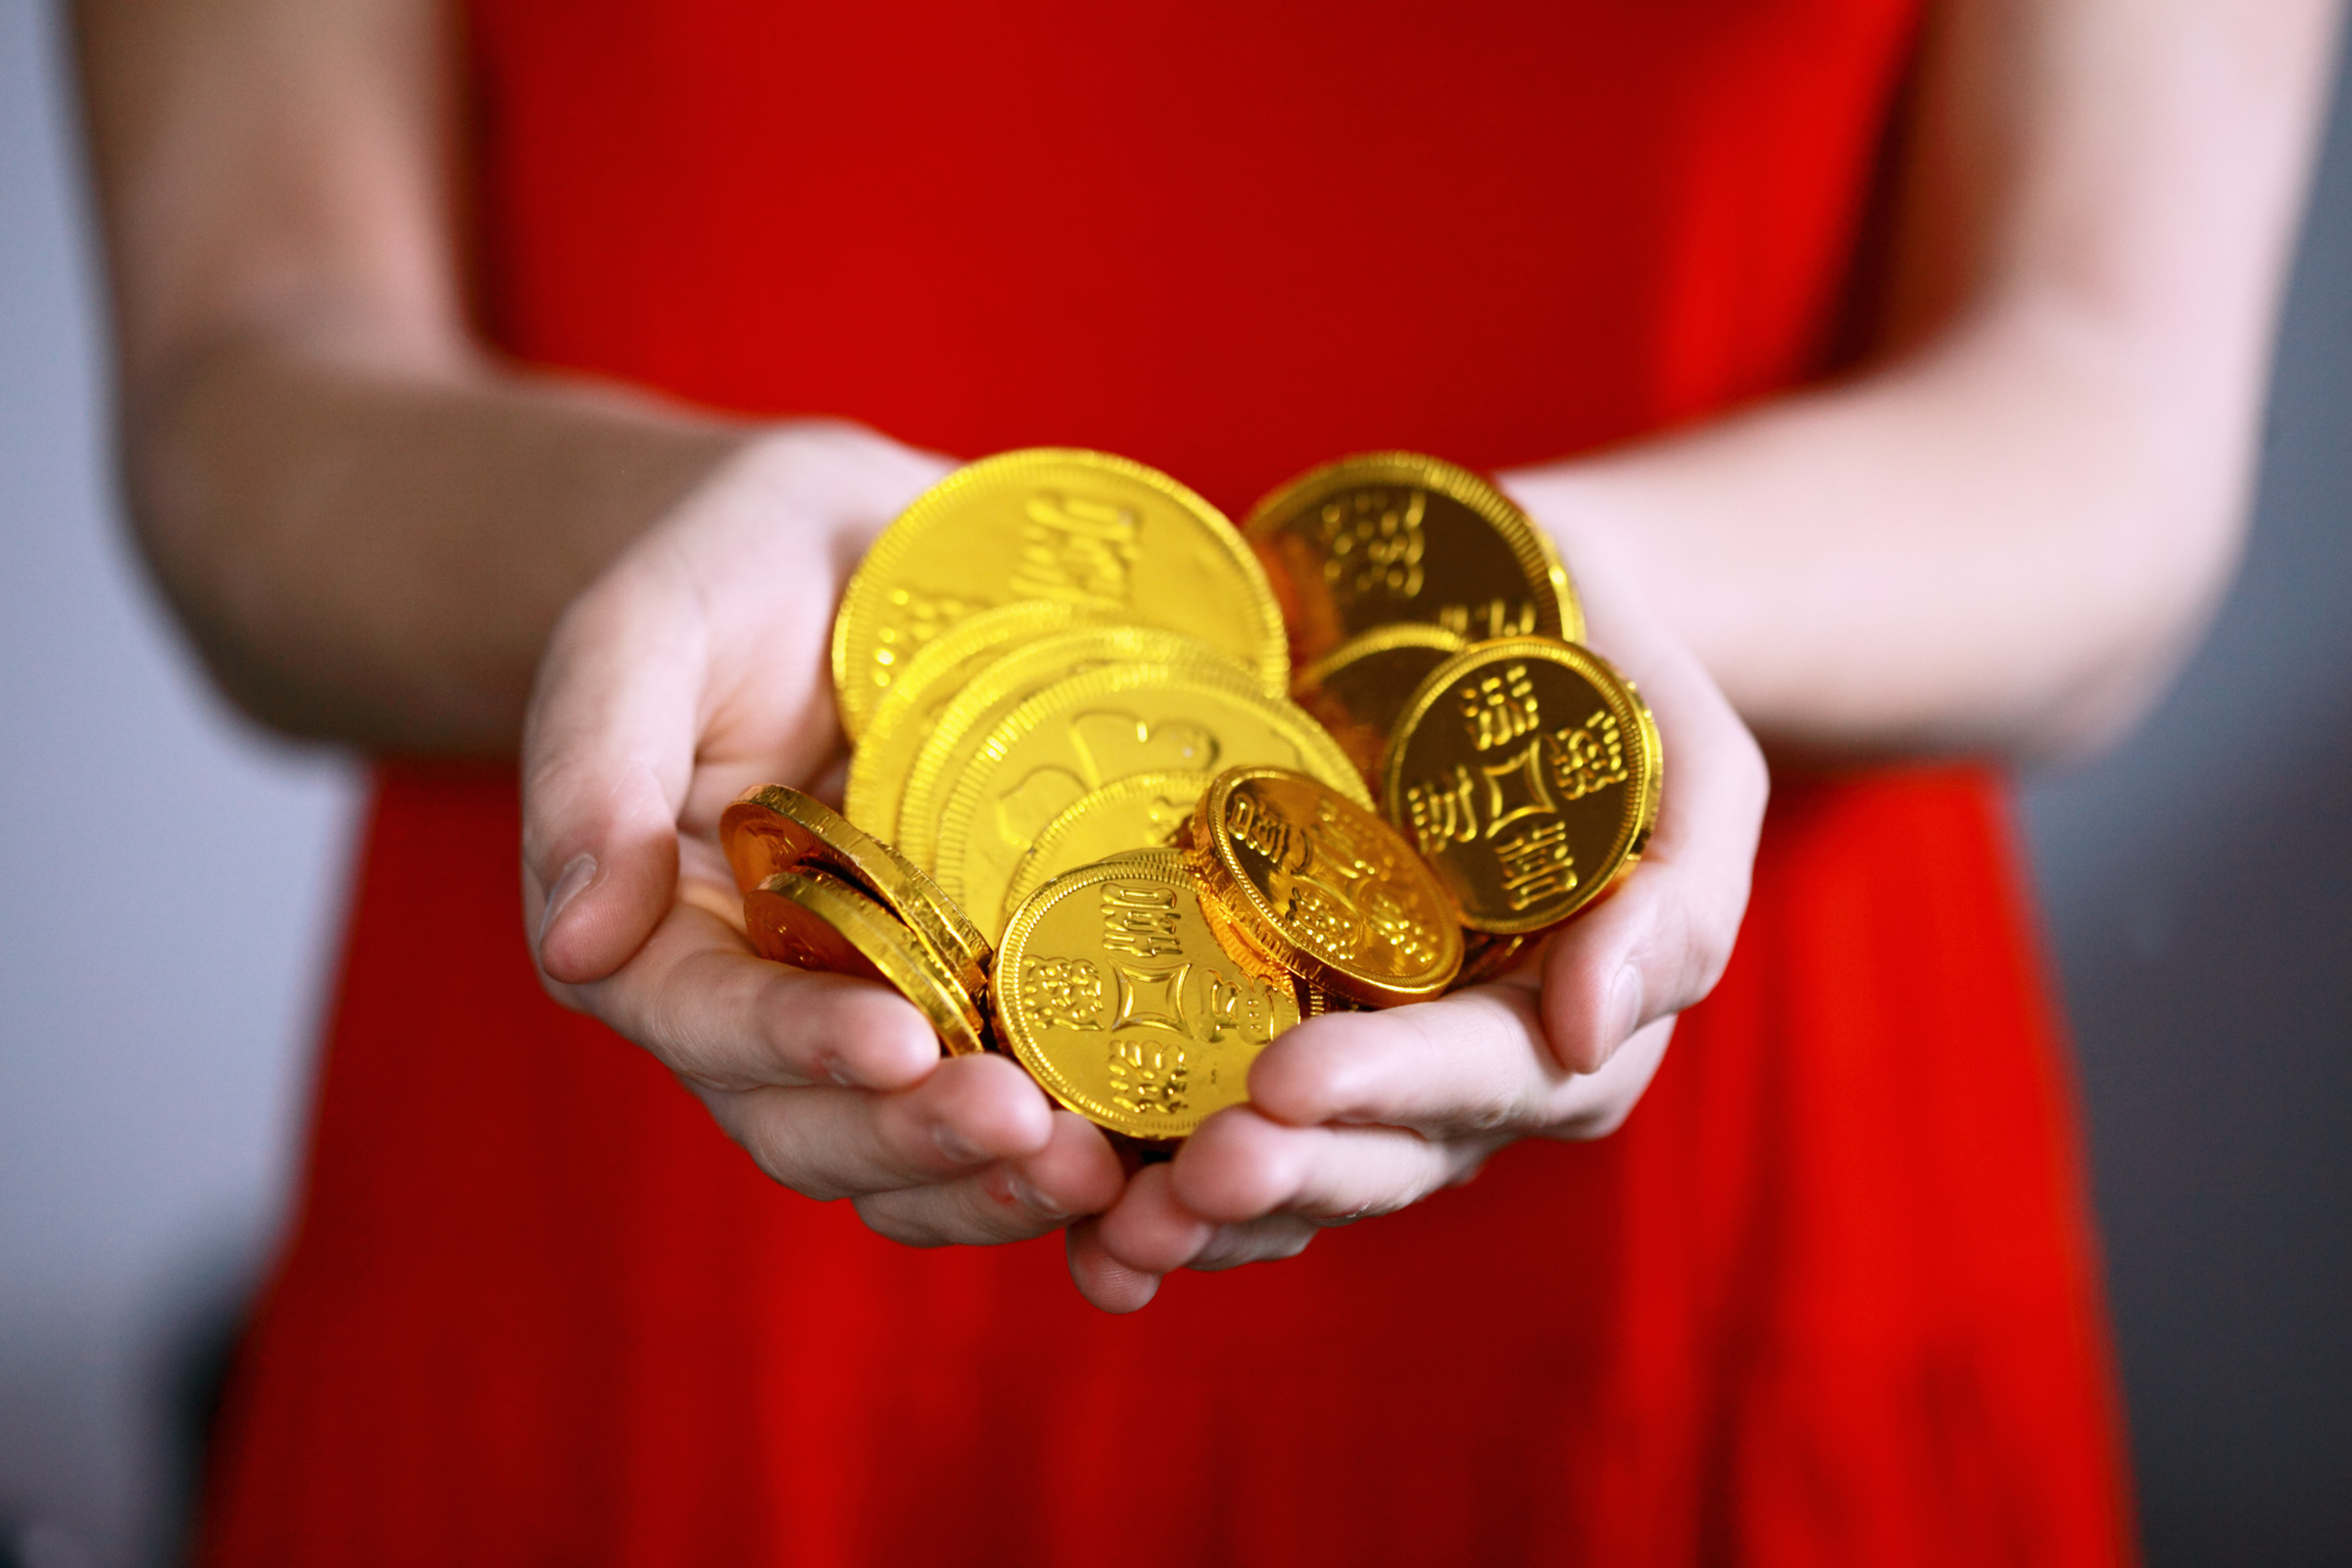 Лучший новогодний подарок — денежный талисман в виде нескольких китайских монет, перевязанных красной лентой. Фото © Unsplash